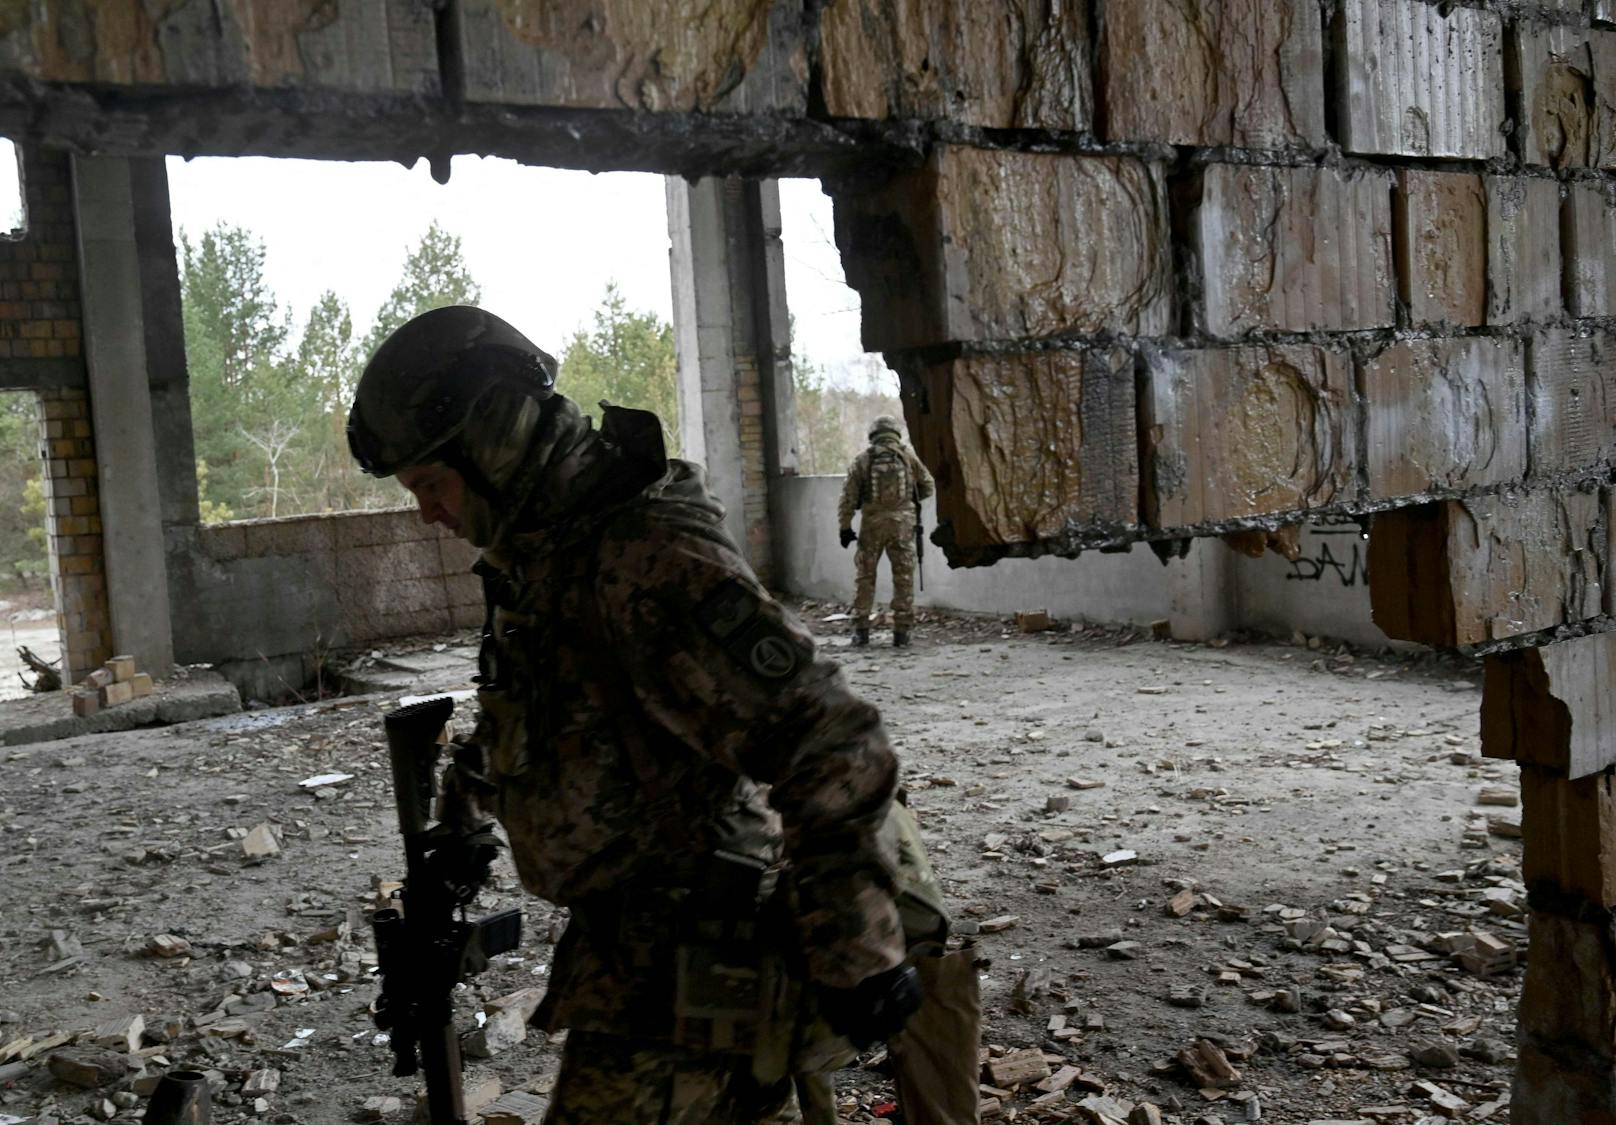 Am Dienstag kam es laut Berichten zu schweren Gefechten in der Ostukraine. Beide Seiten sprechen bereits von Todesopfern.